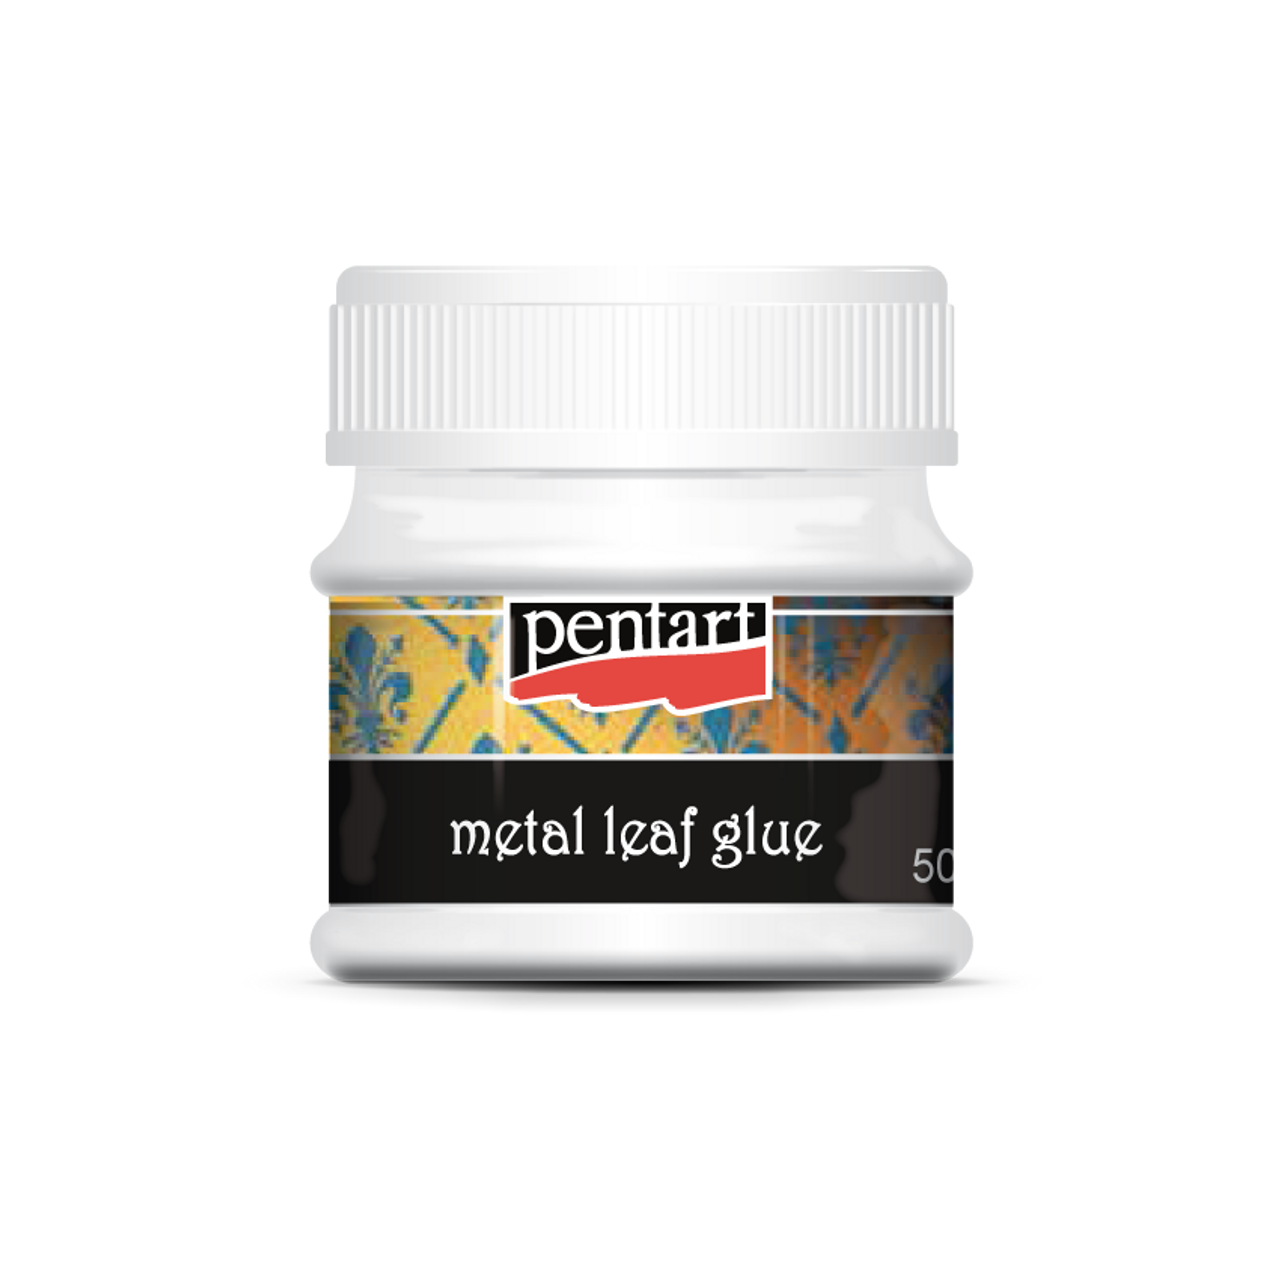 Pentart Metal Leaf Glue